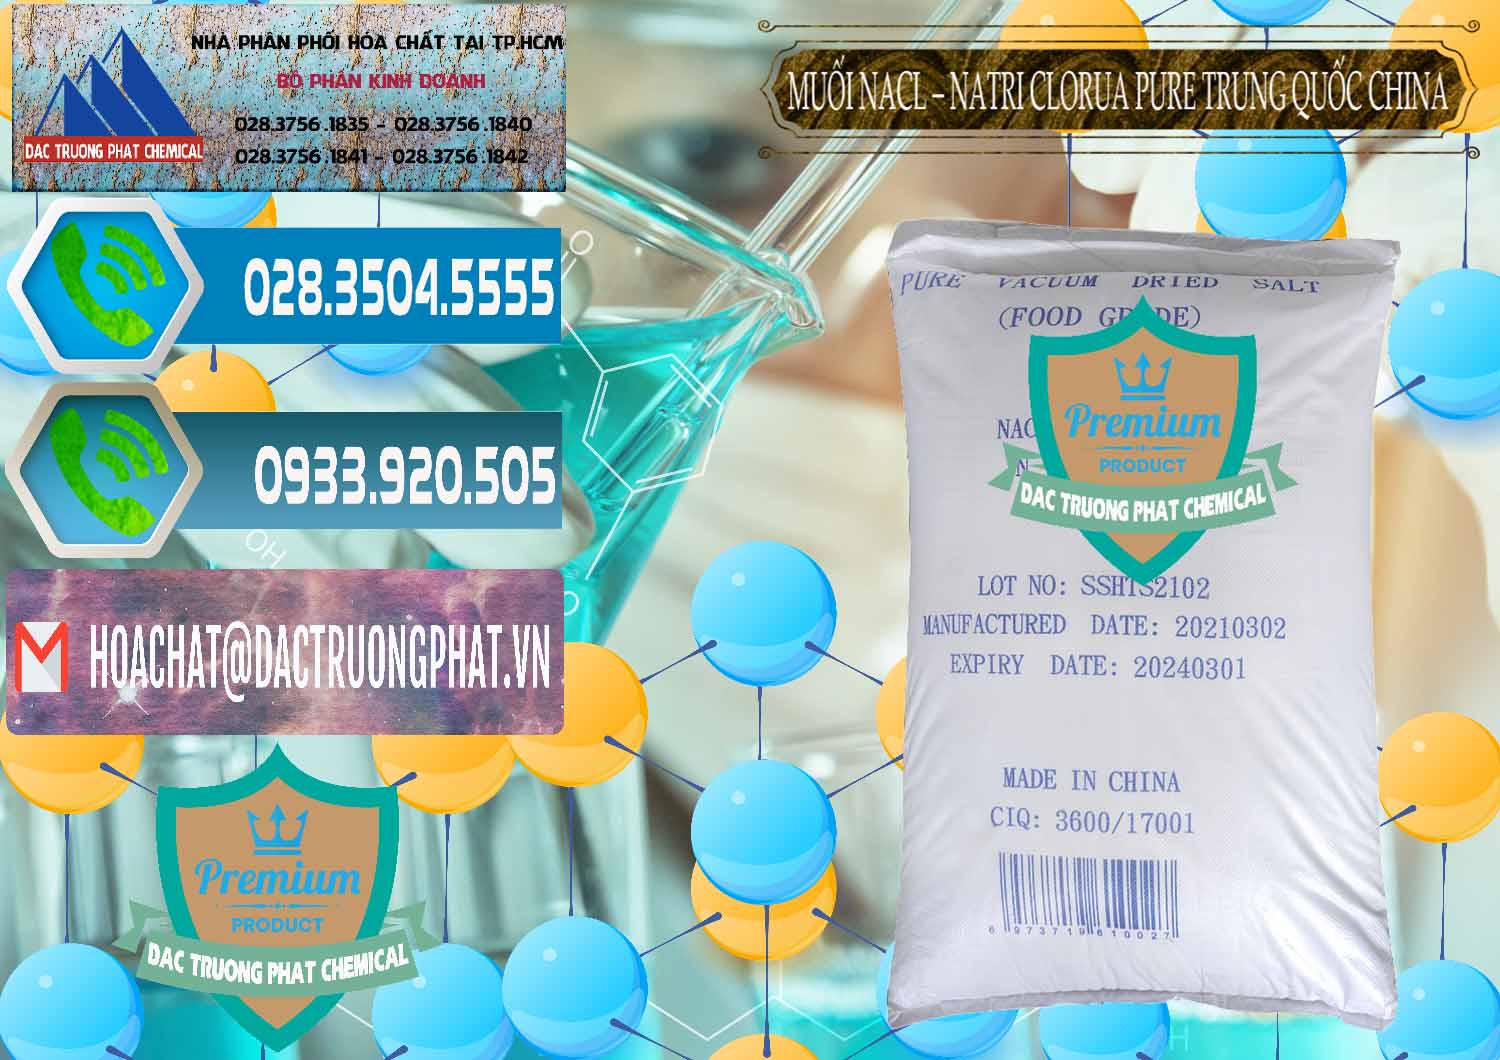 Cung cấp & bán Muối NaCL – Sodium Chloride Pure Trung Quốc China - 0230 - Nhập khẩu ( phân phối ) hóa chất tại TP.HCM - congtyhoachat.net